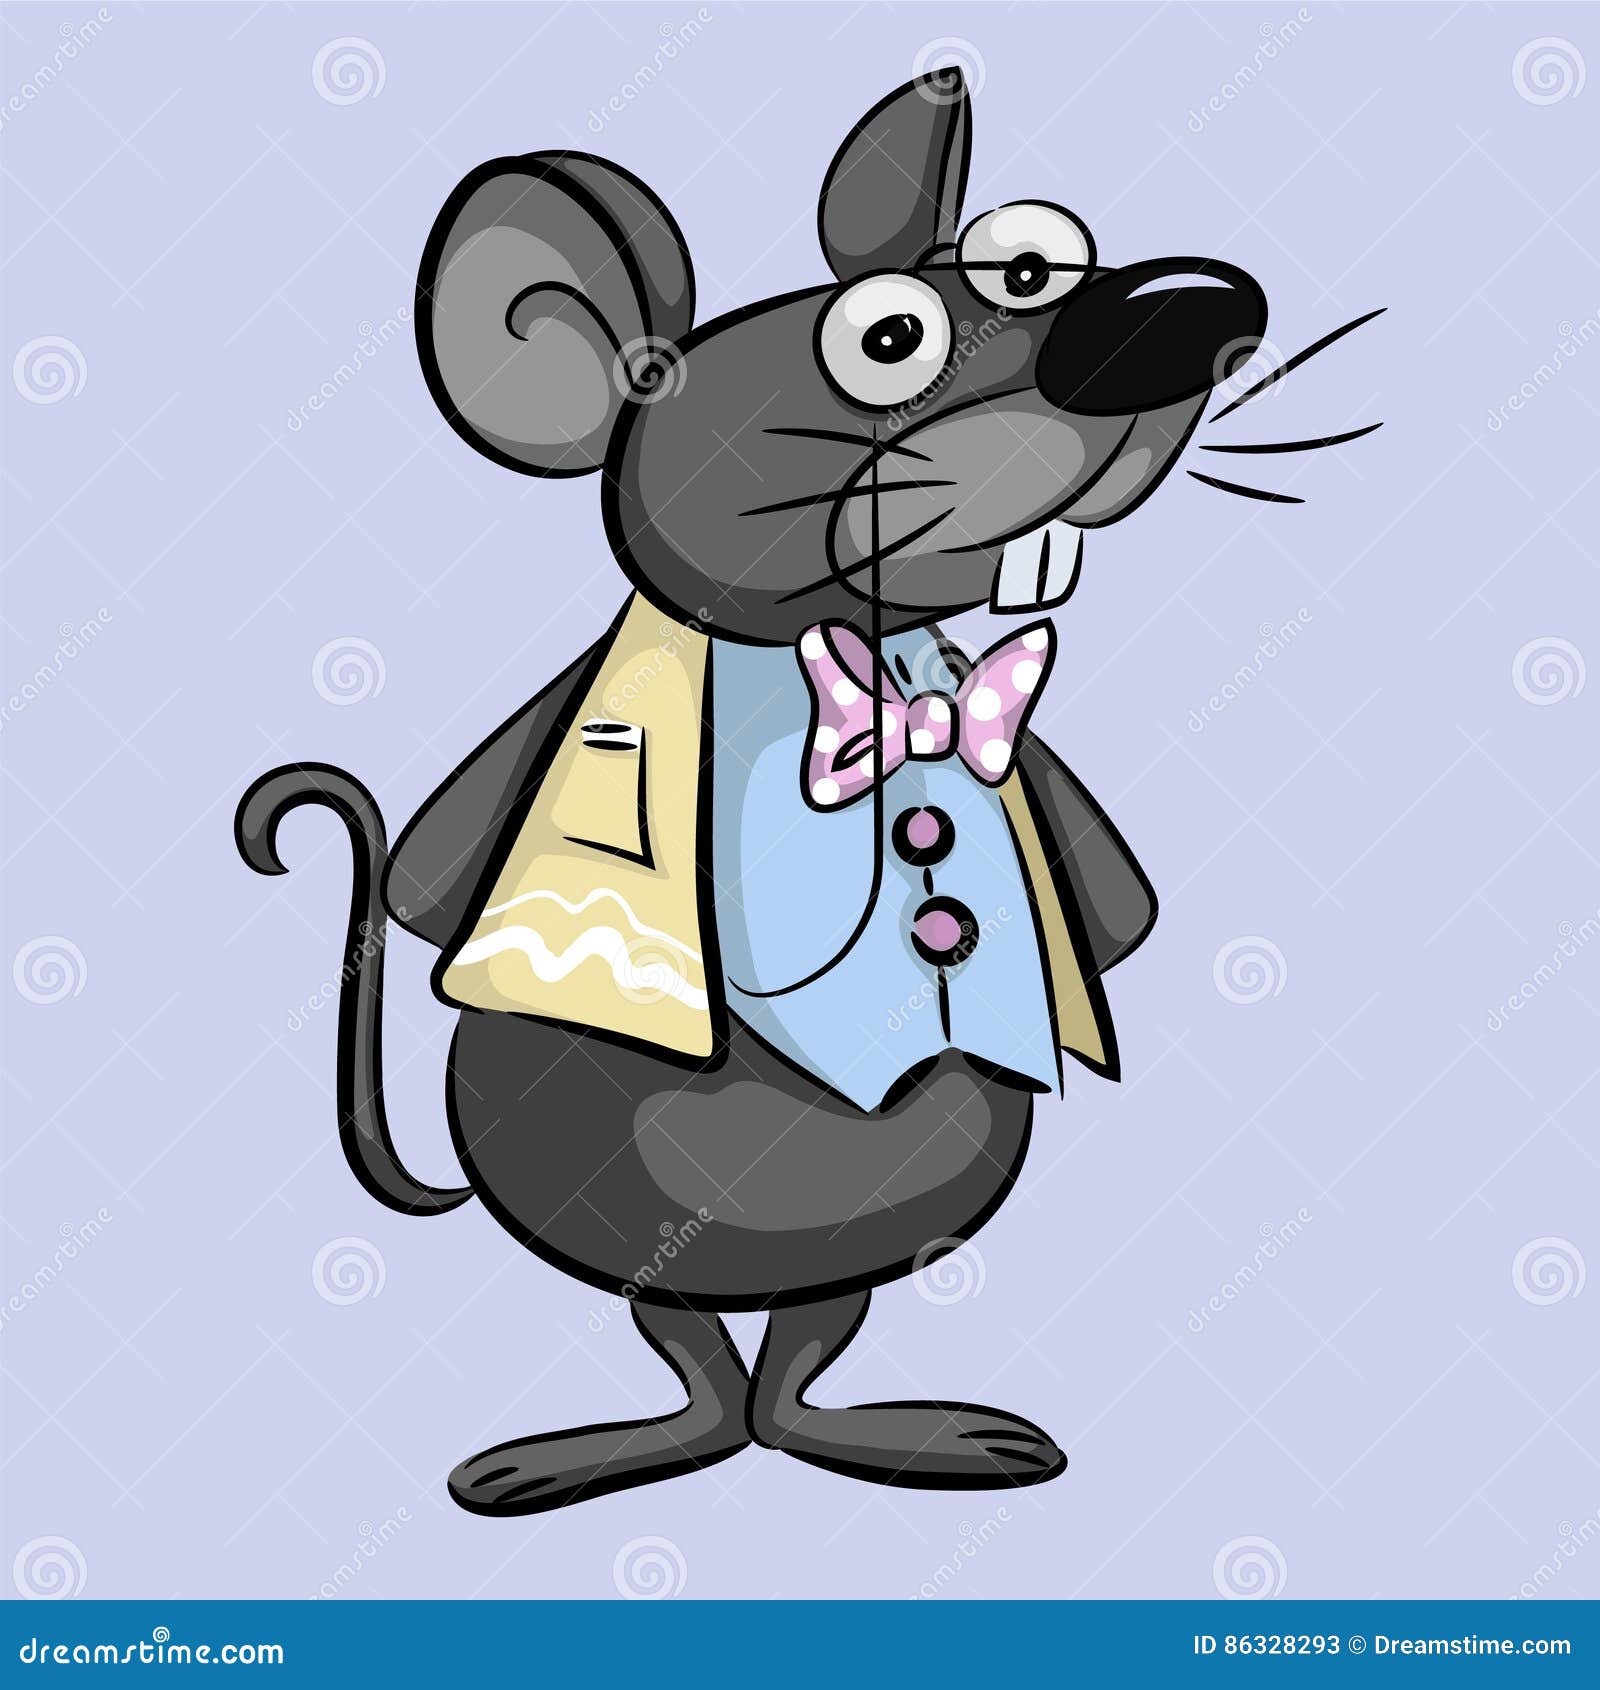 Smart Mouse Cartoon - Illustration Stock Illustration - Illustration of  little, wise: 86328293